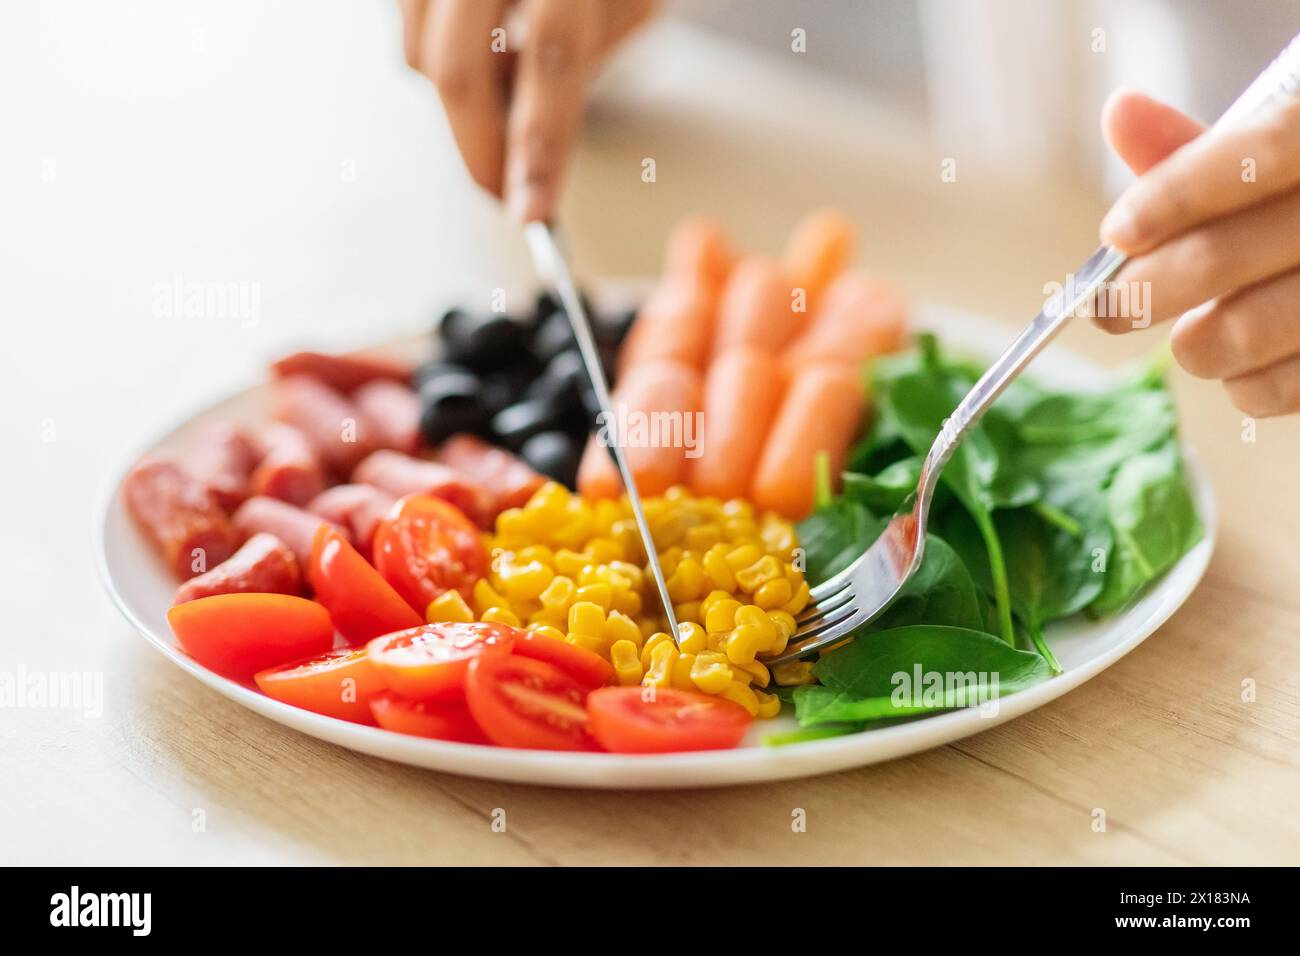 Servire a mano un pasto dietetico bilanciato sul piatto Foto Stock